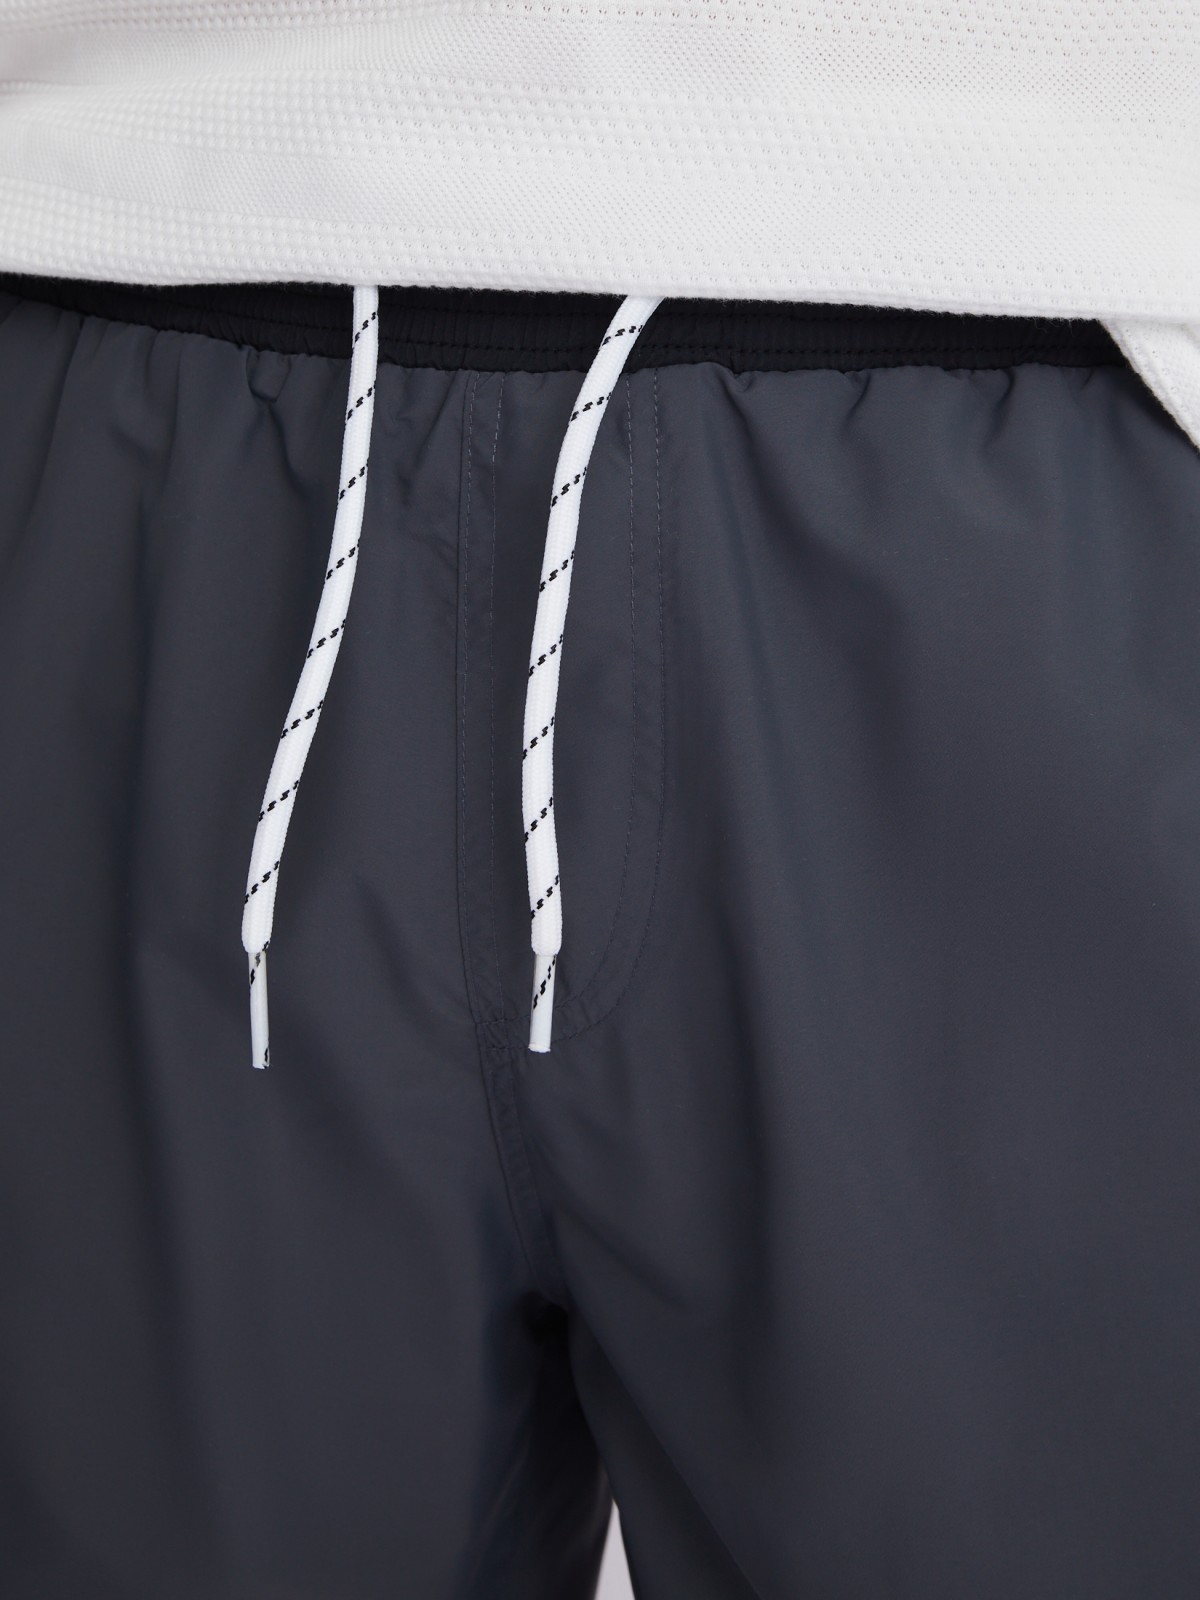 Плавательные шорты на резинке zolla 013257S59062, цвет серый, размер M - фото 4